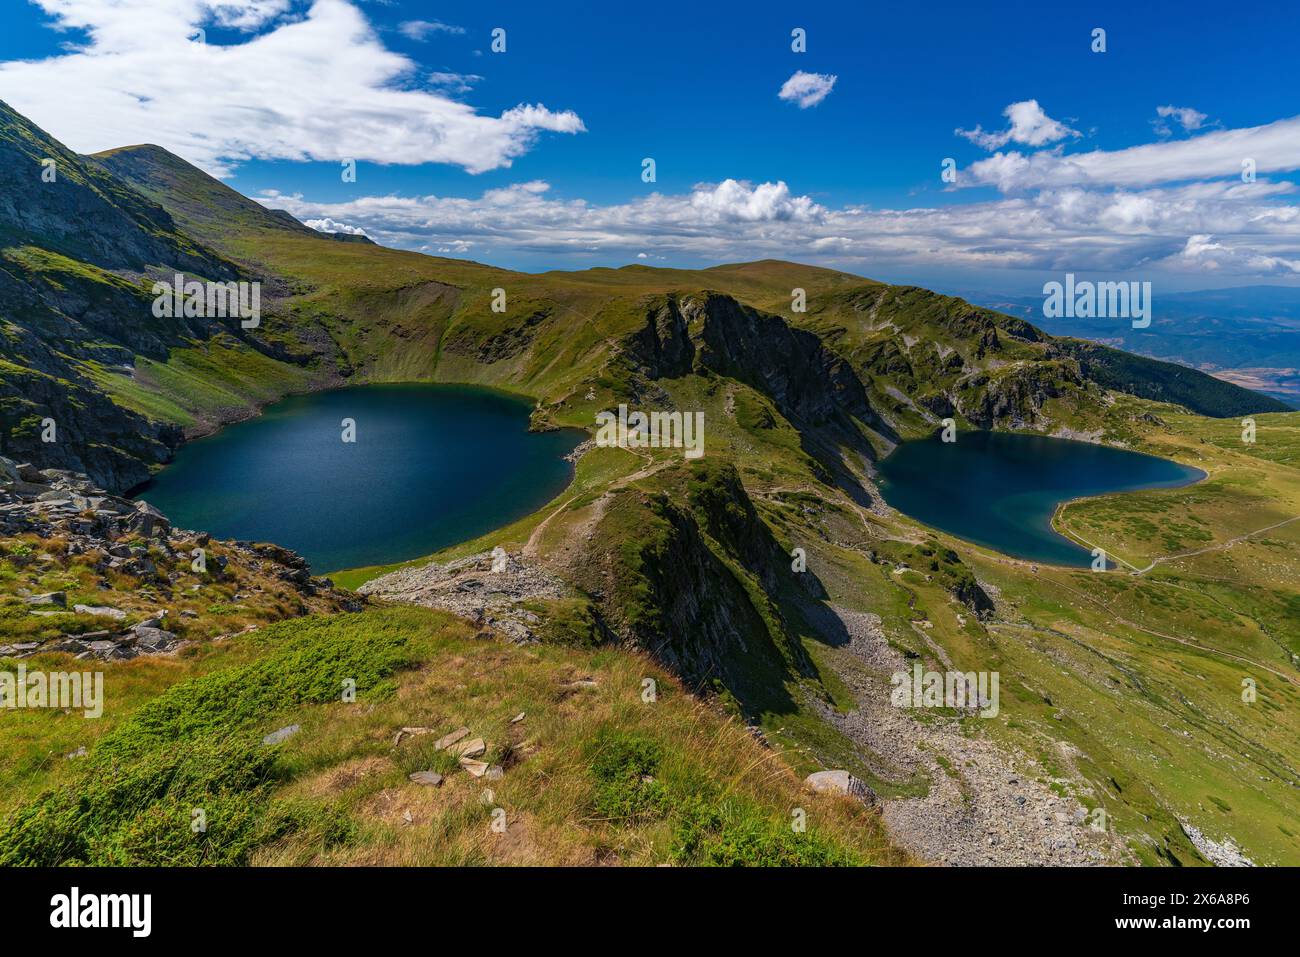 The Seven Rila Lakes in the Rila Mountain, Bulgaria Stock Photo